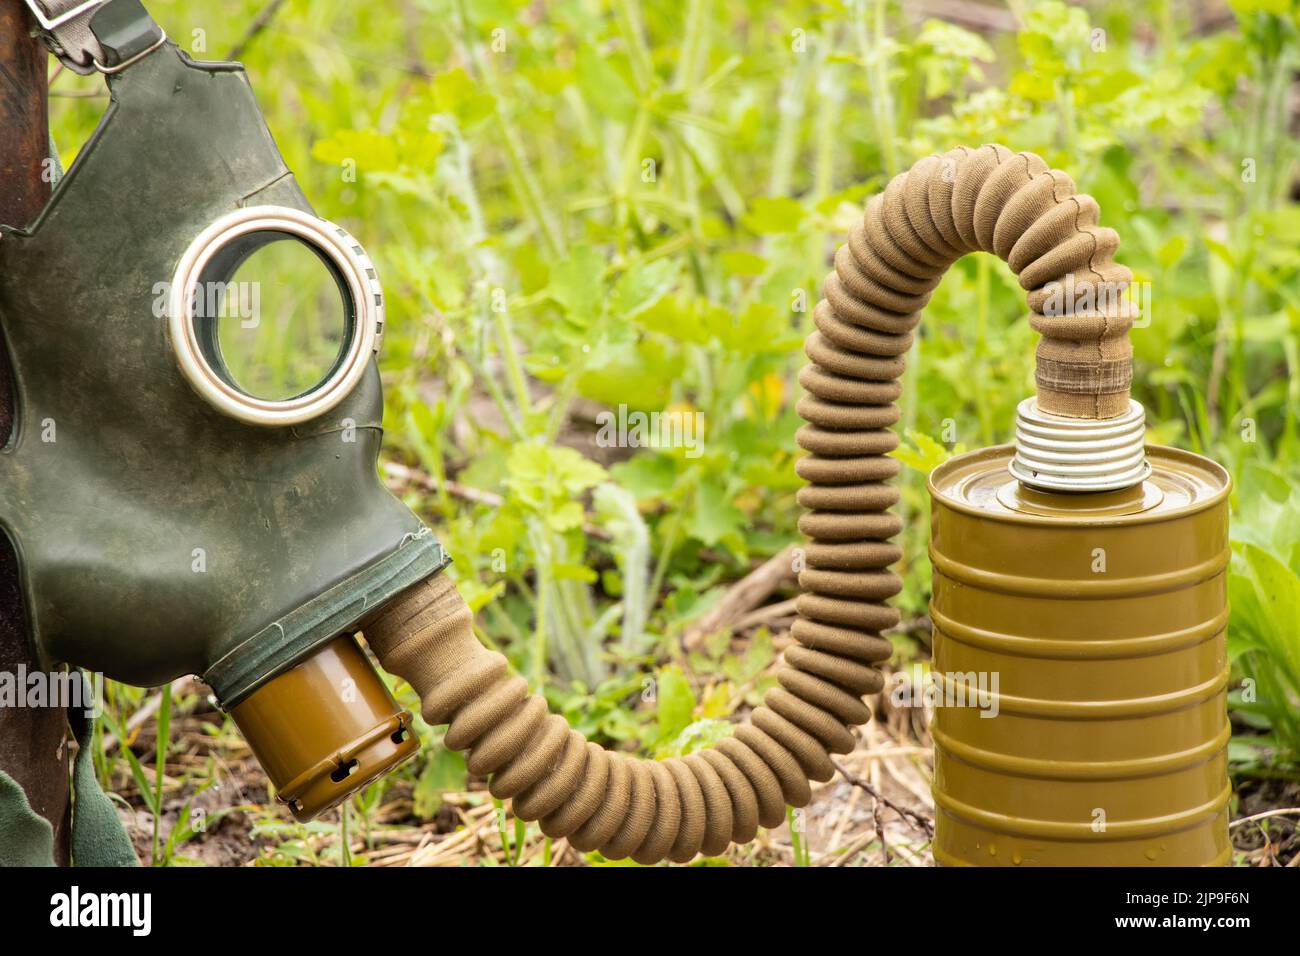 Rundt og rundt Dekoration skille sig ud Antique gas mask hi-res stock photography and images - Alamy